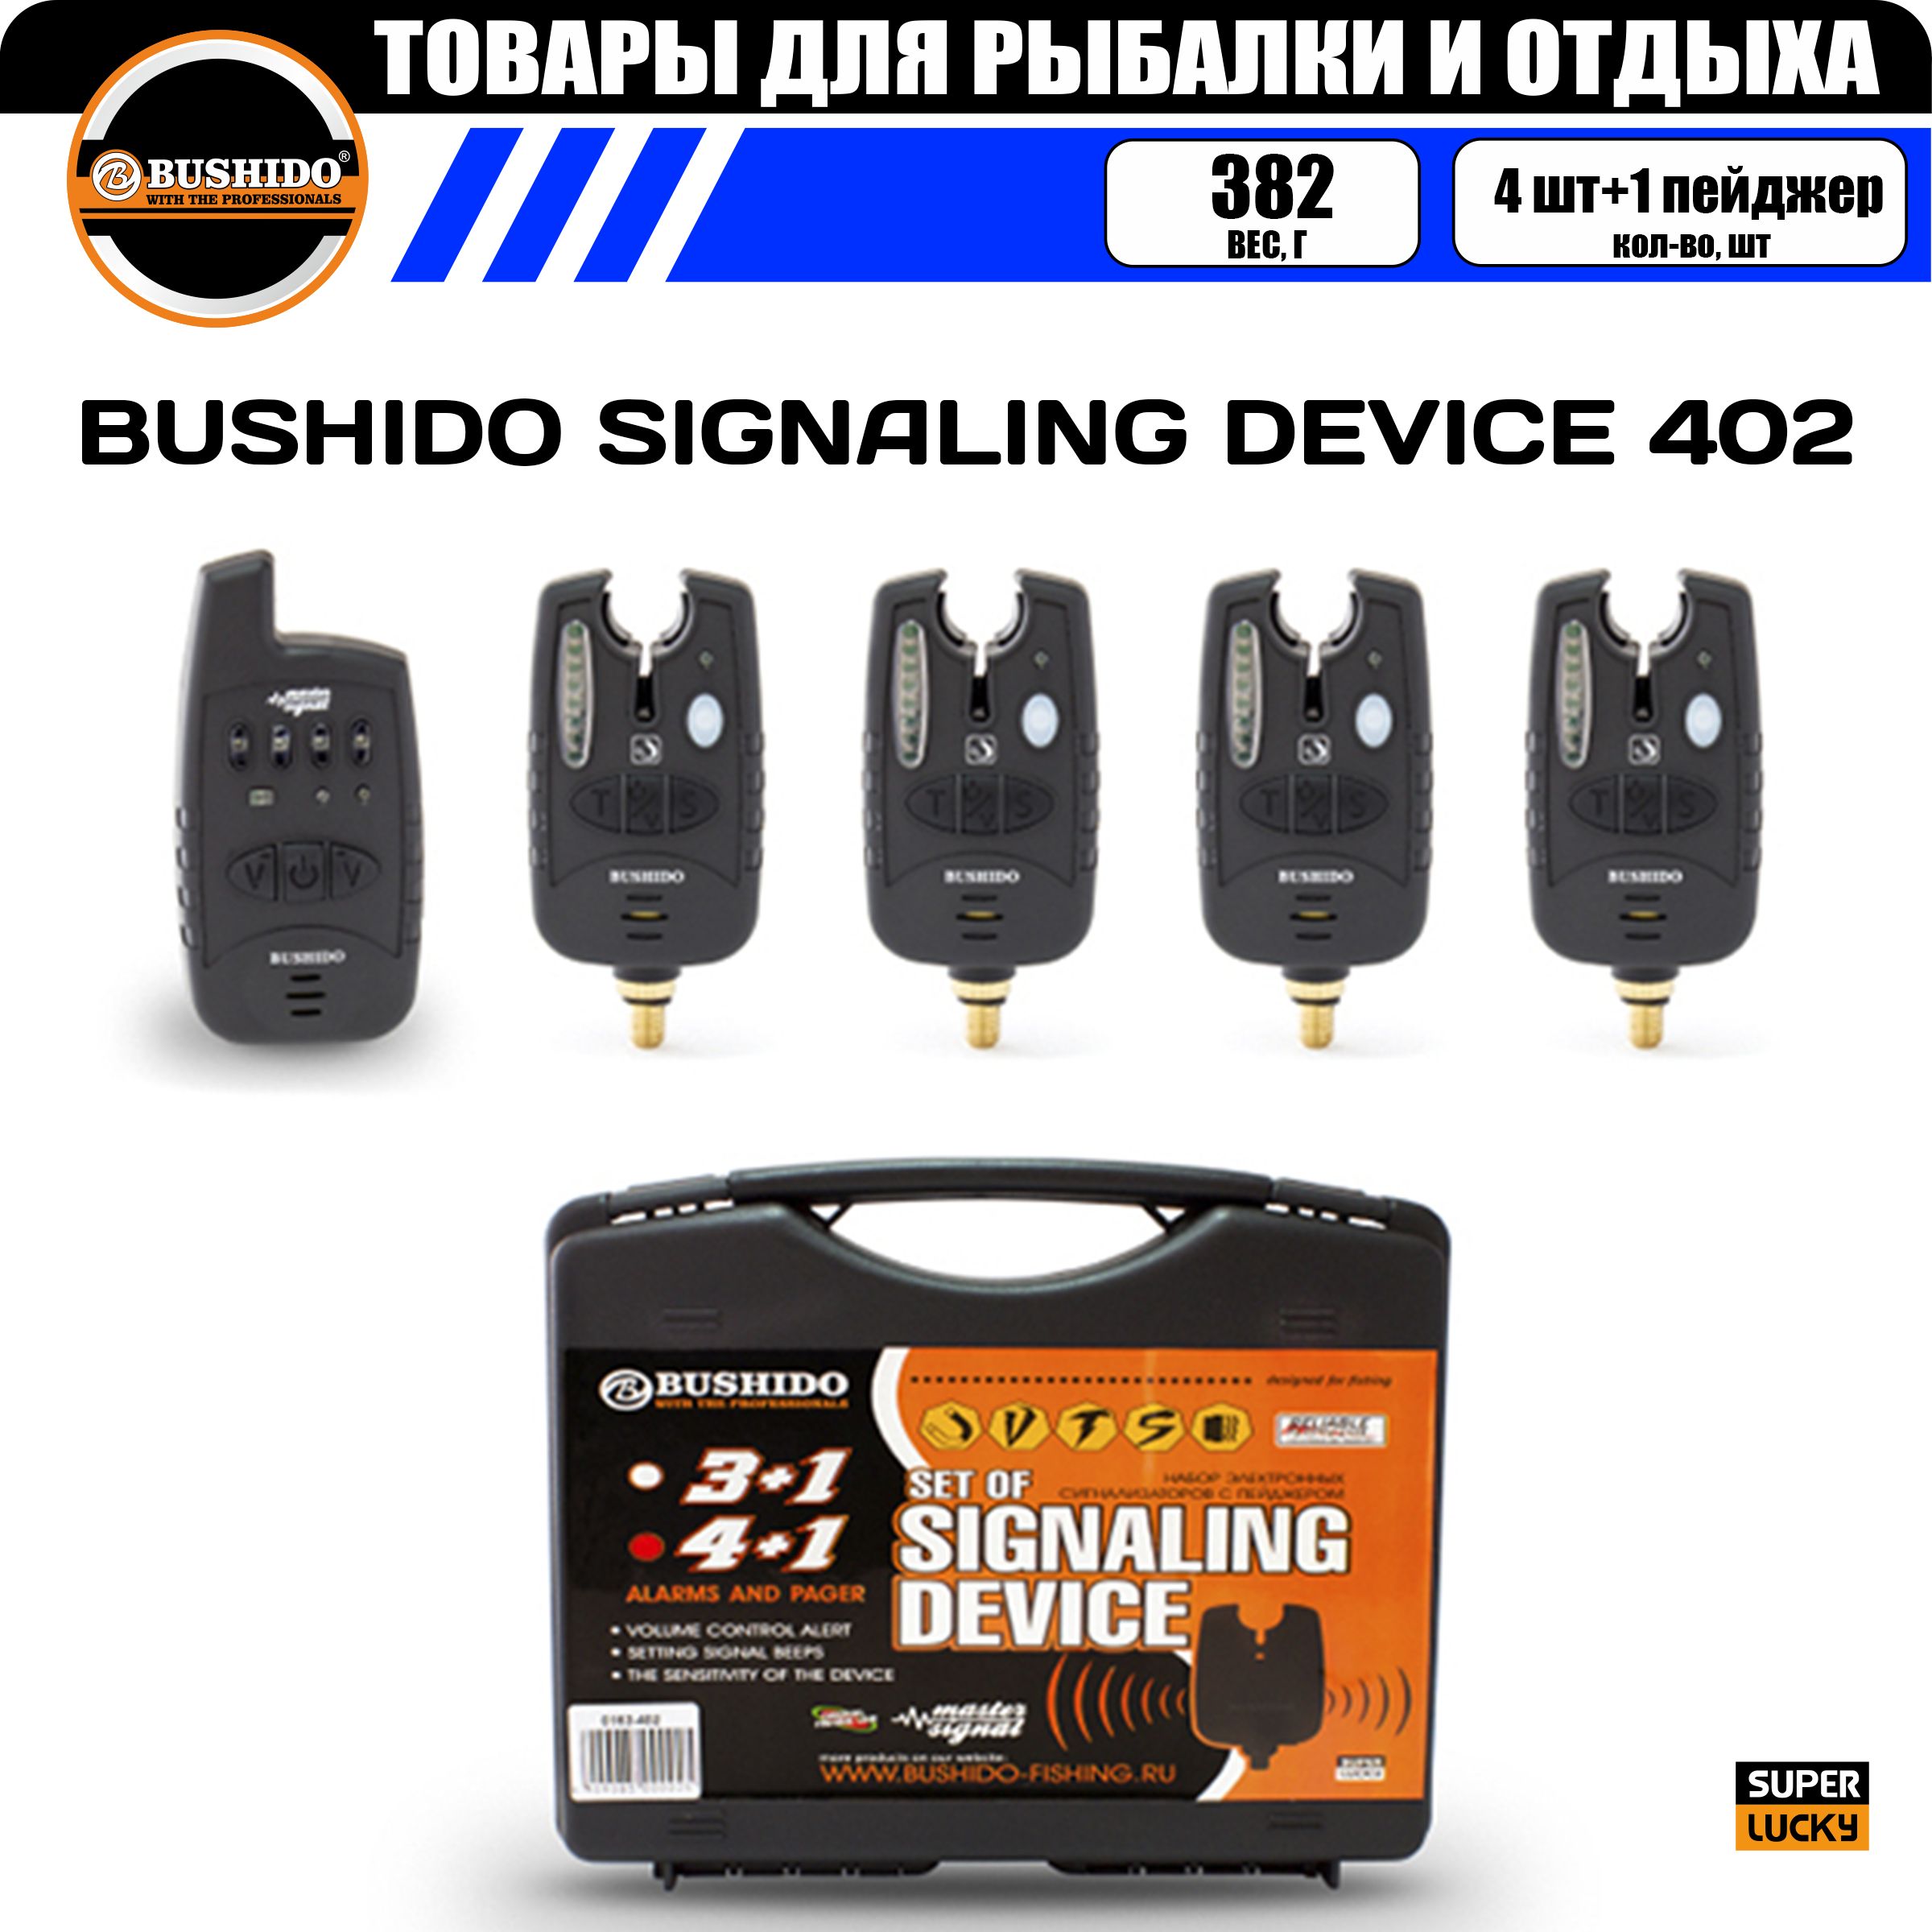 Набор сигнализаторов поклёвки BUSHIDO SIGNALING DEVICE 402 (4шт+1пейджер), для карповой